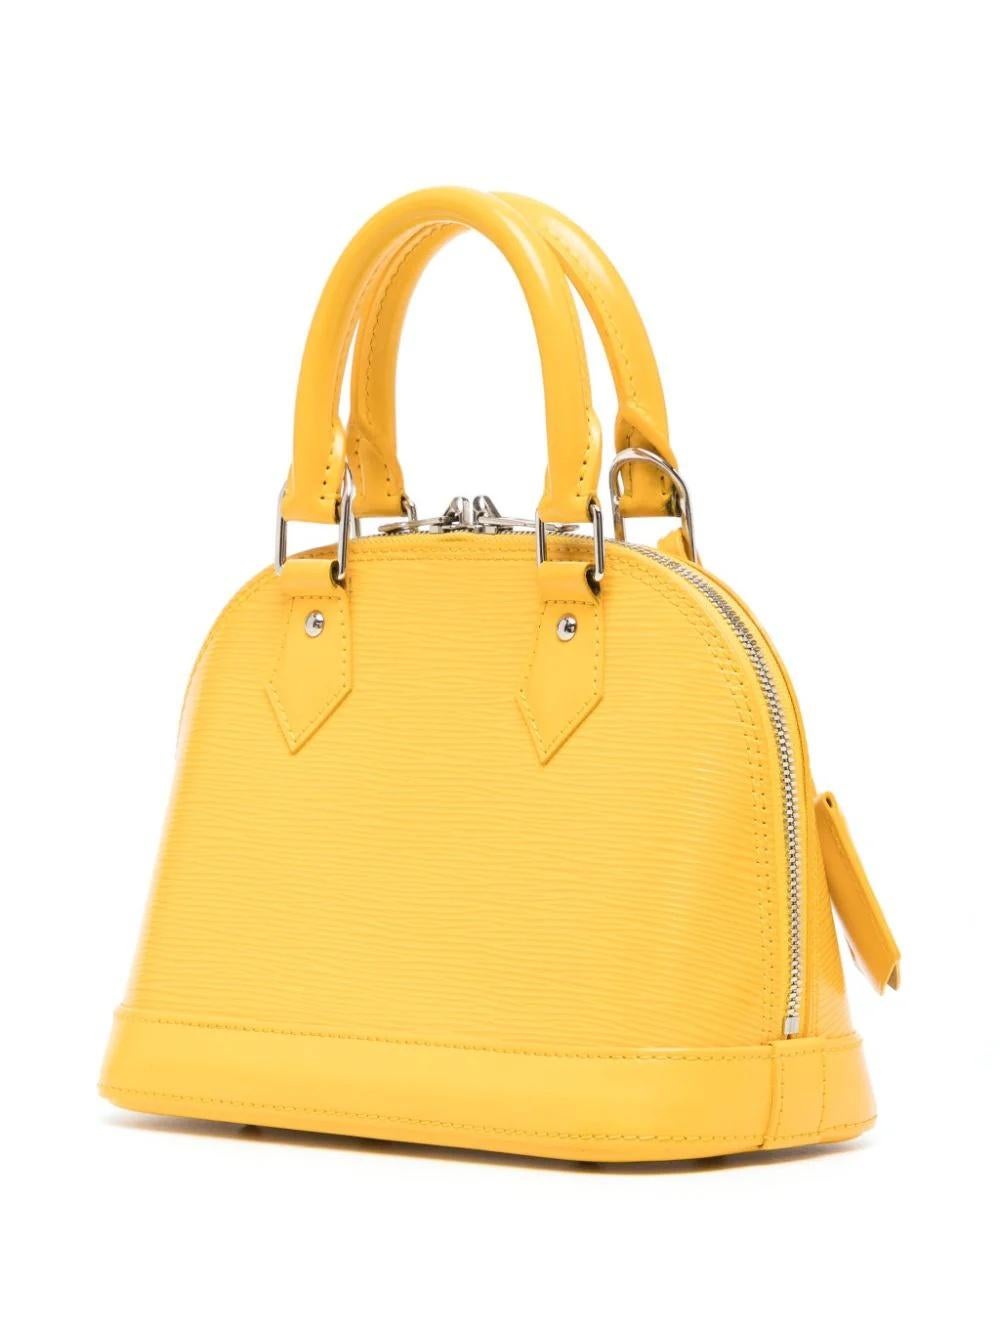 Sold at Auction: Louis Vuitton, Louis Vuitton Yellow Epi Leather Alma PM  Satchel